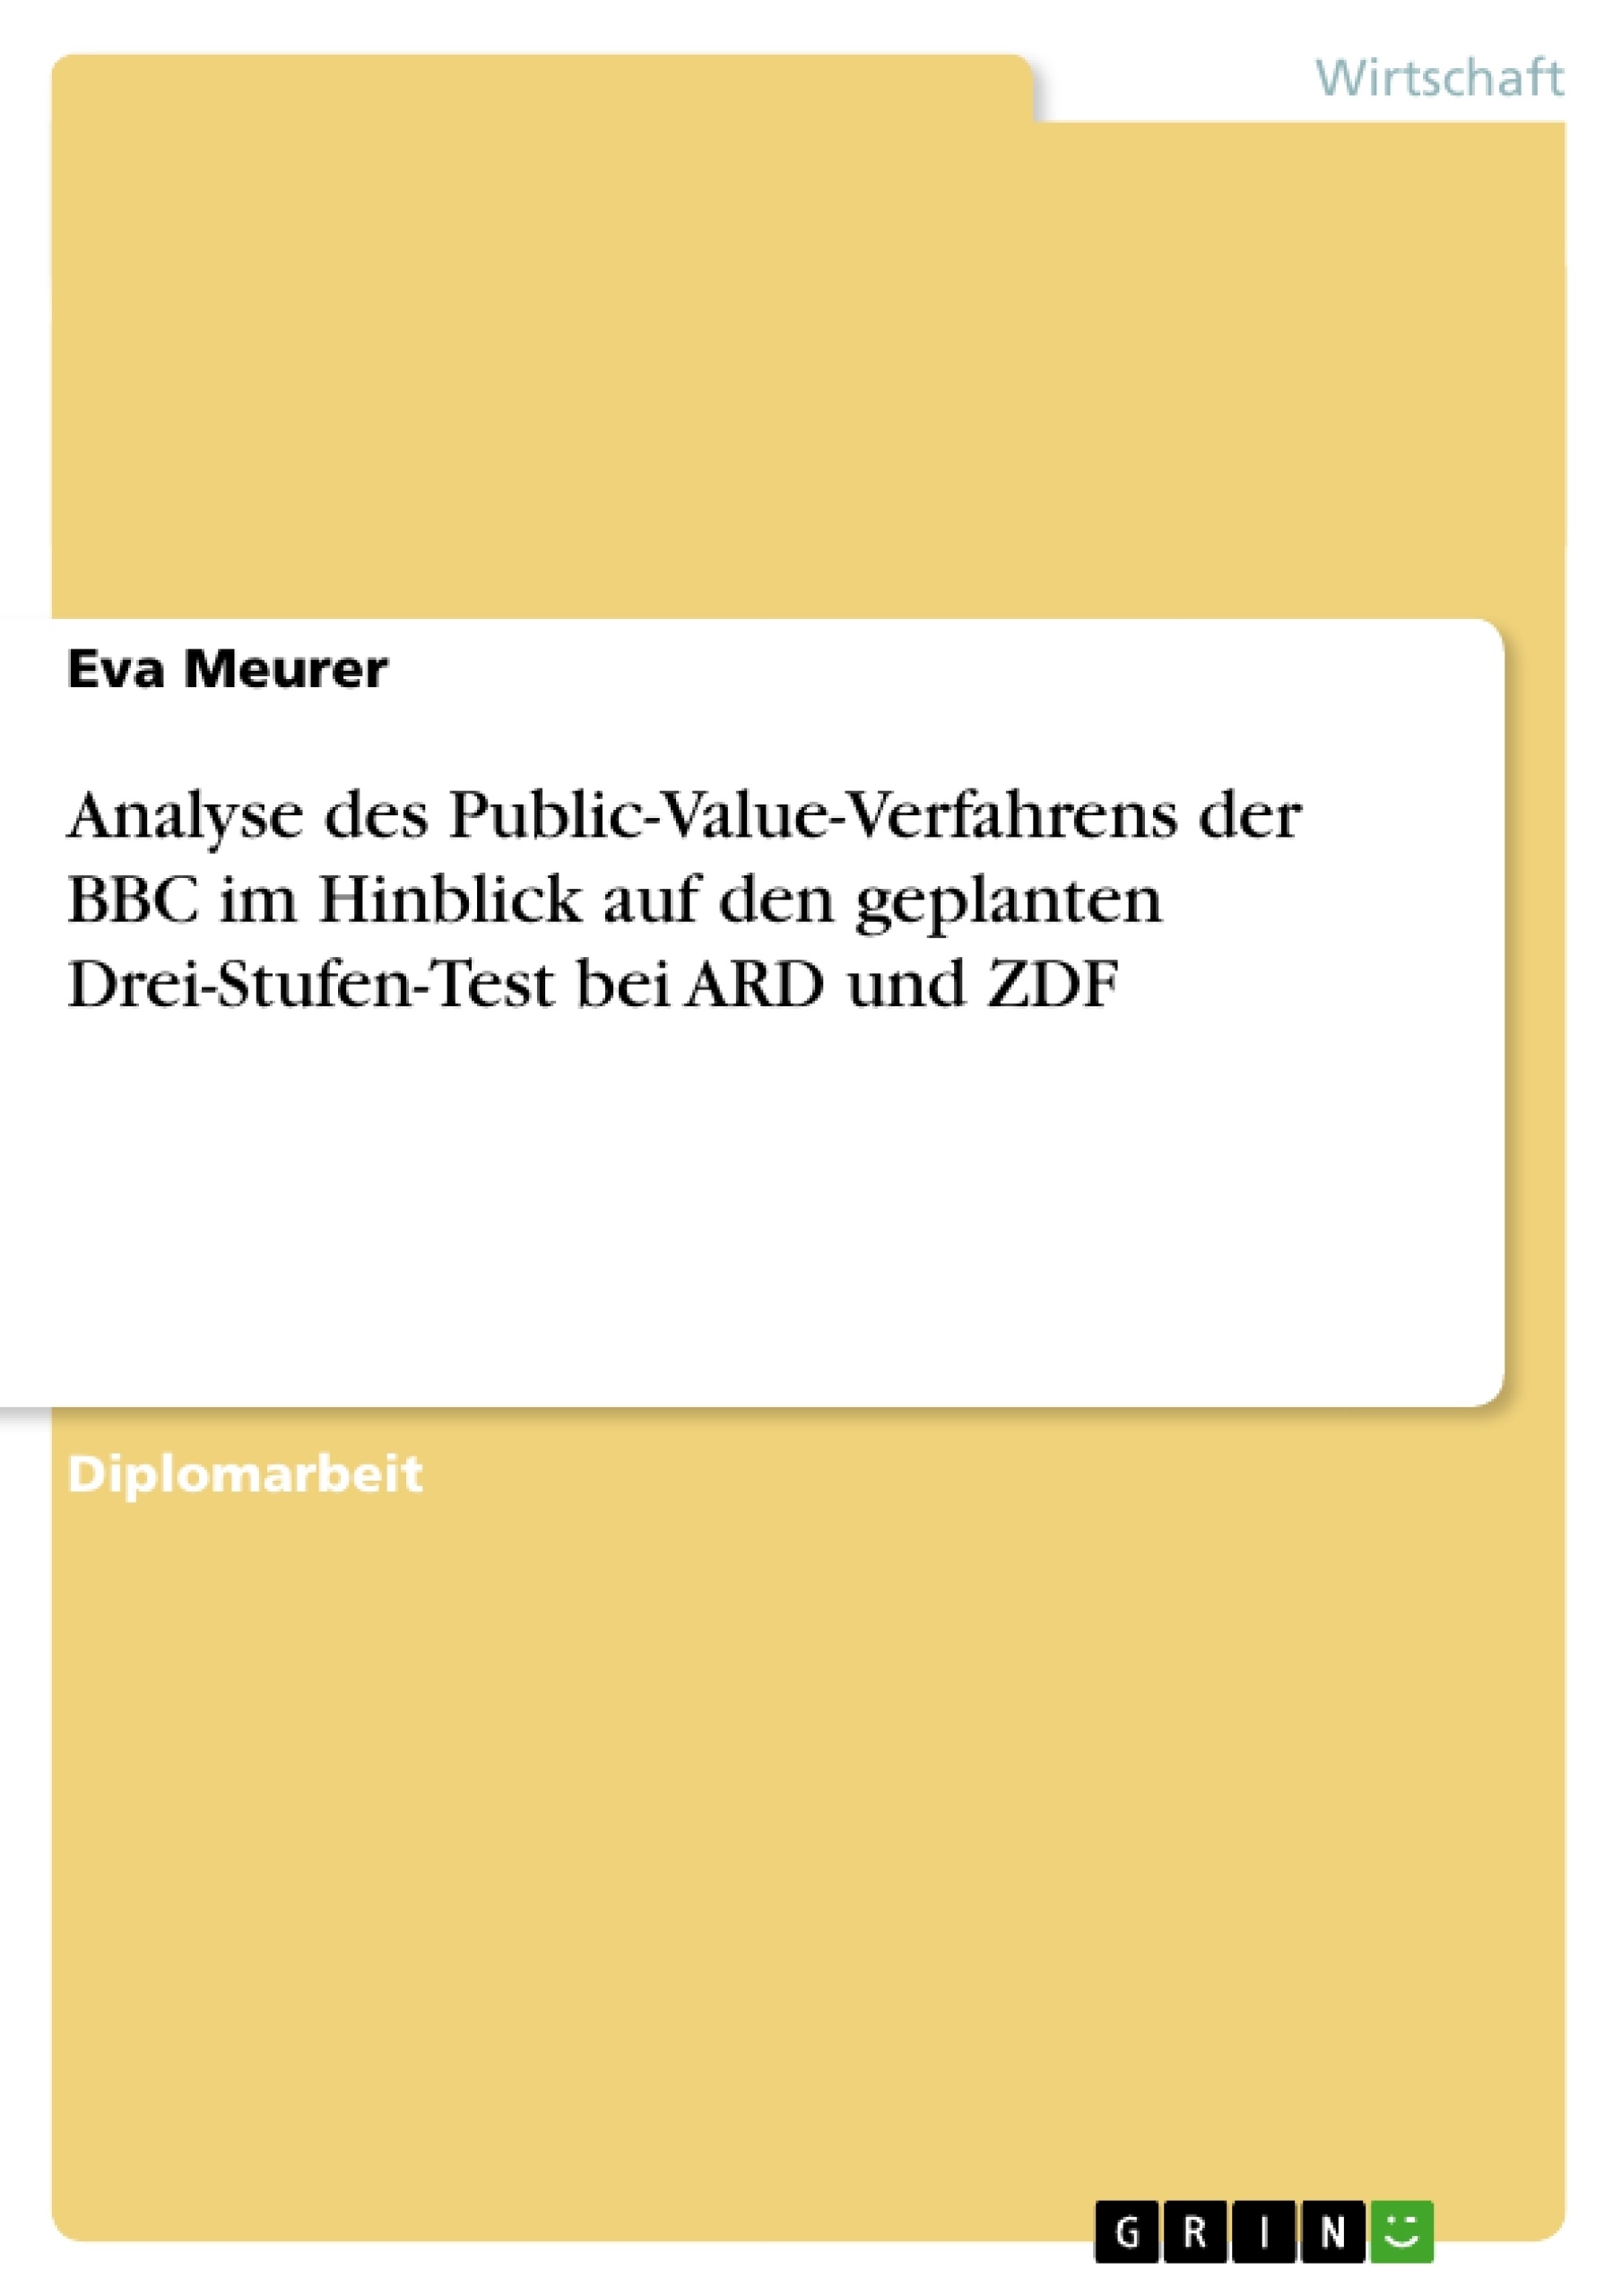 Título: Analyse des Public-Value-Verfahrens der BBC im Hinblick auf den geplanten Drei-Stufen-Test  bei ARD und ZDF